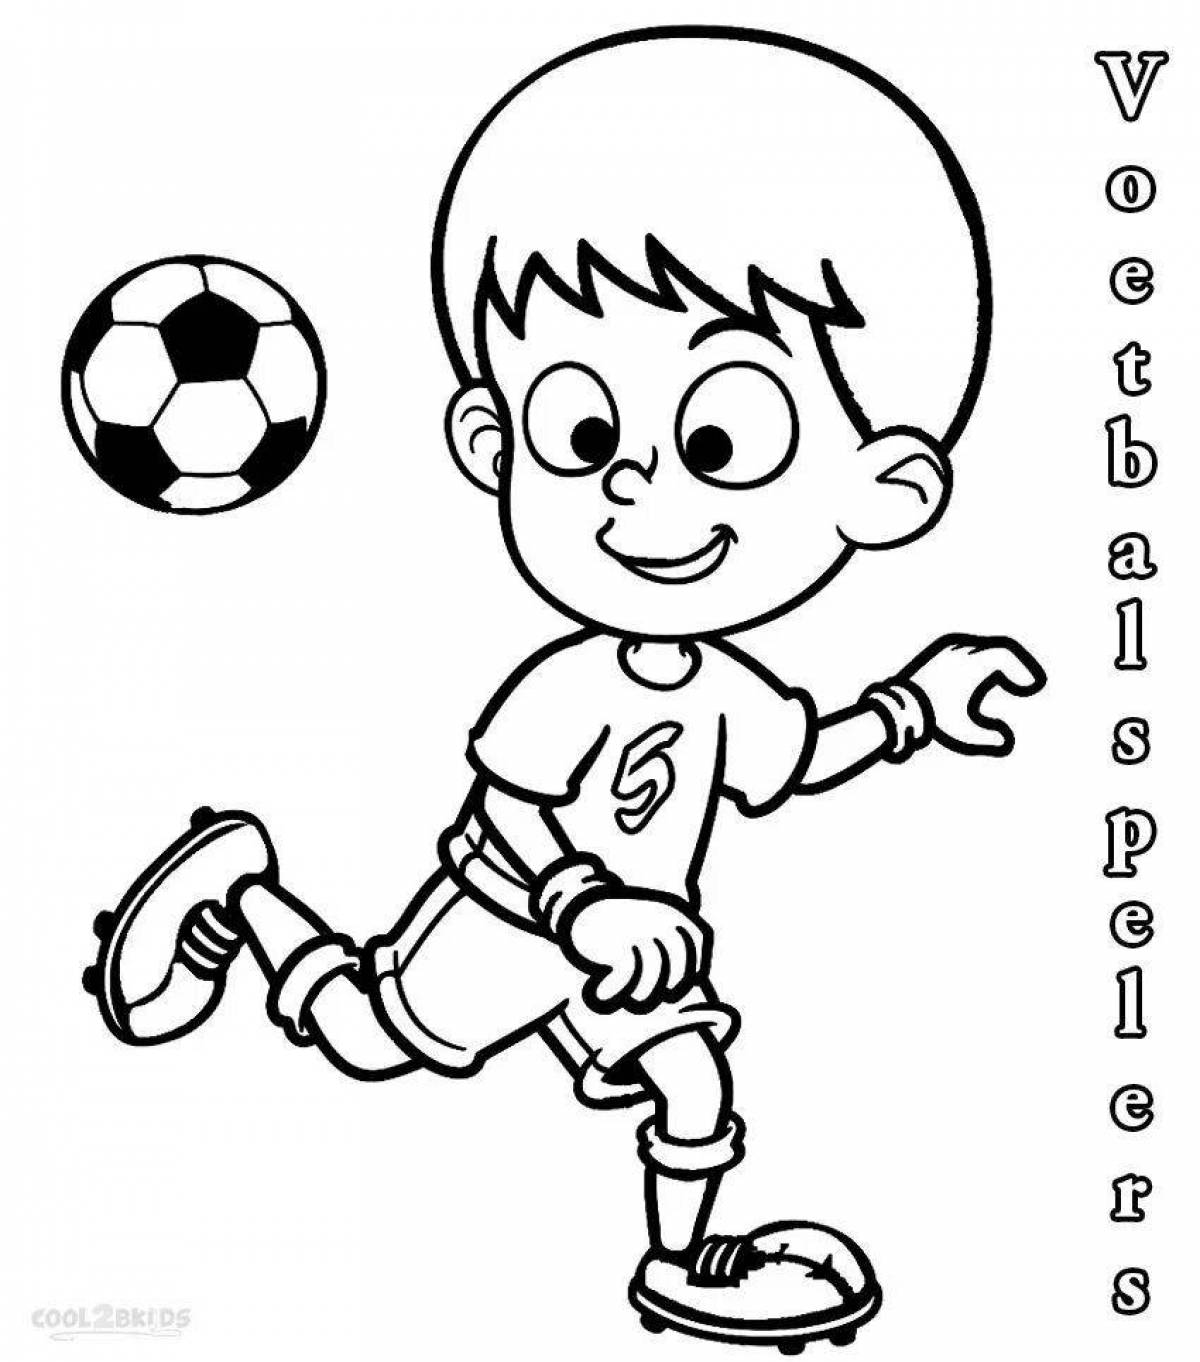 Fun football coloring book for boys